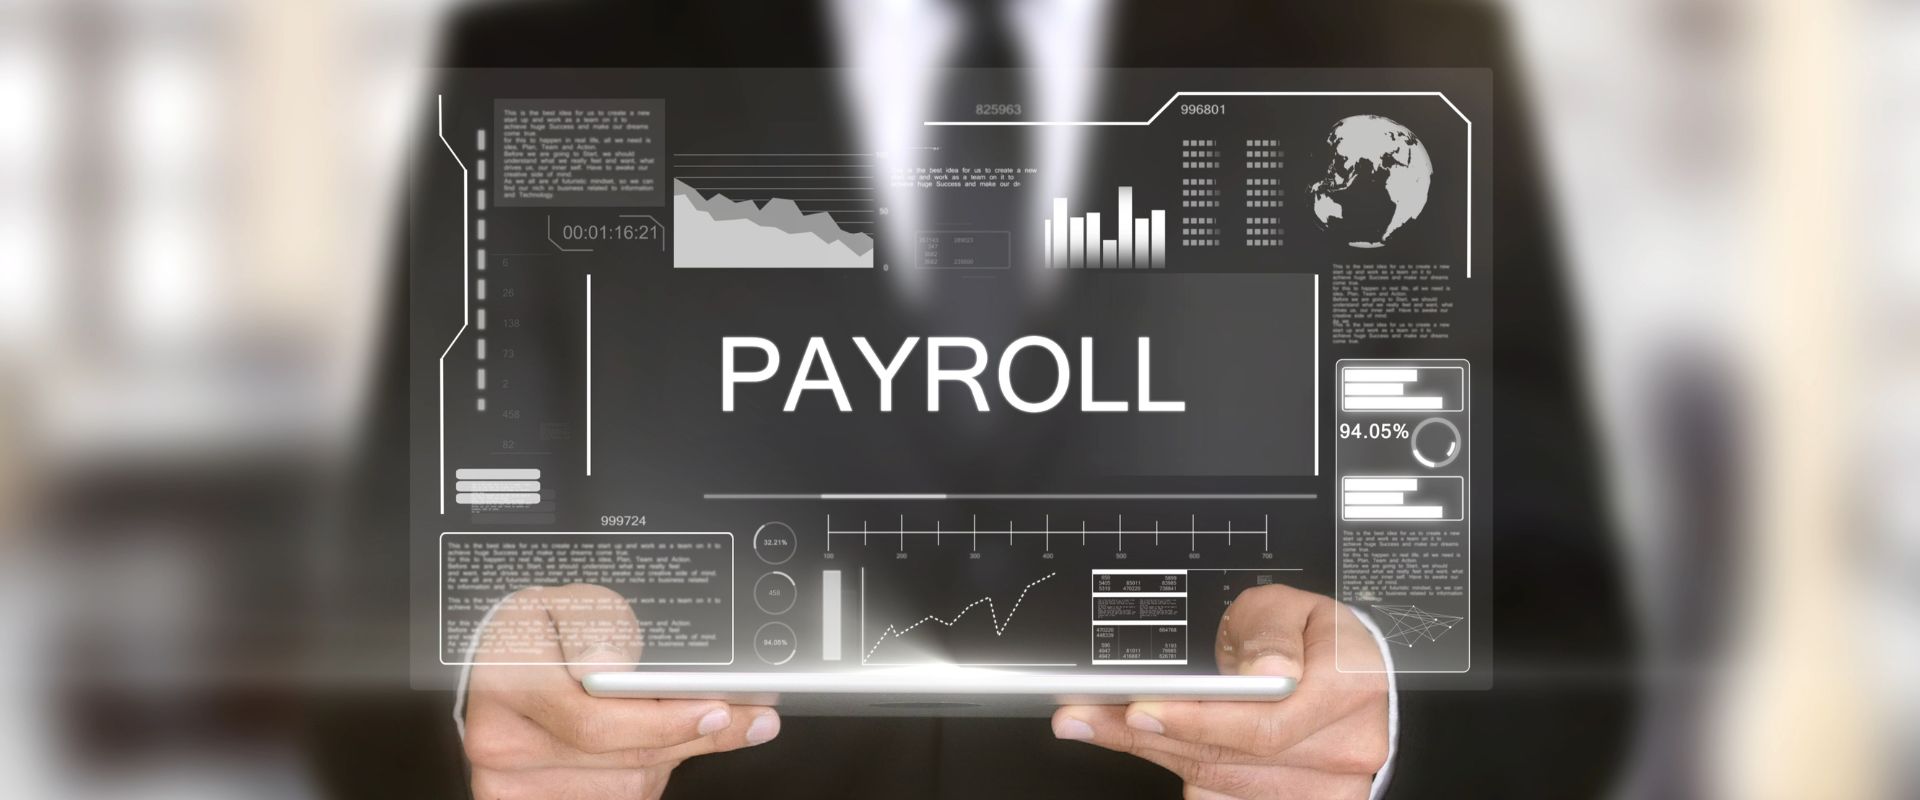 Payroll slide on screen